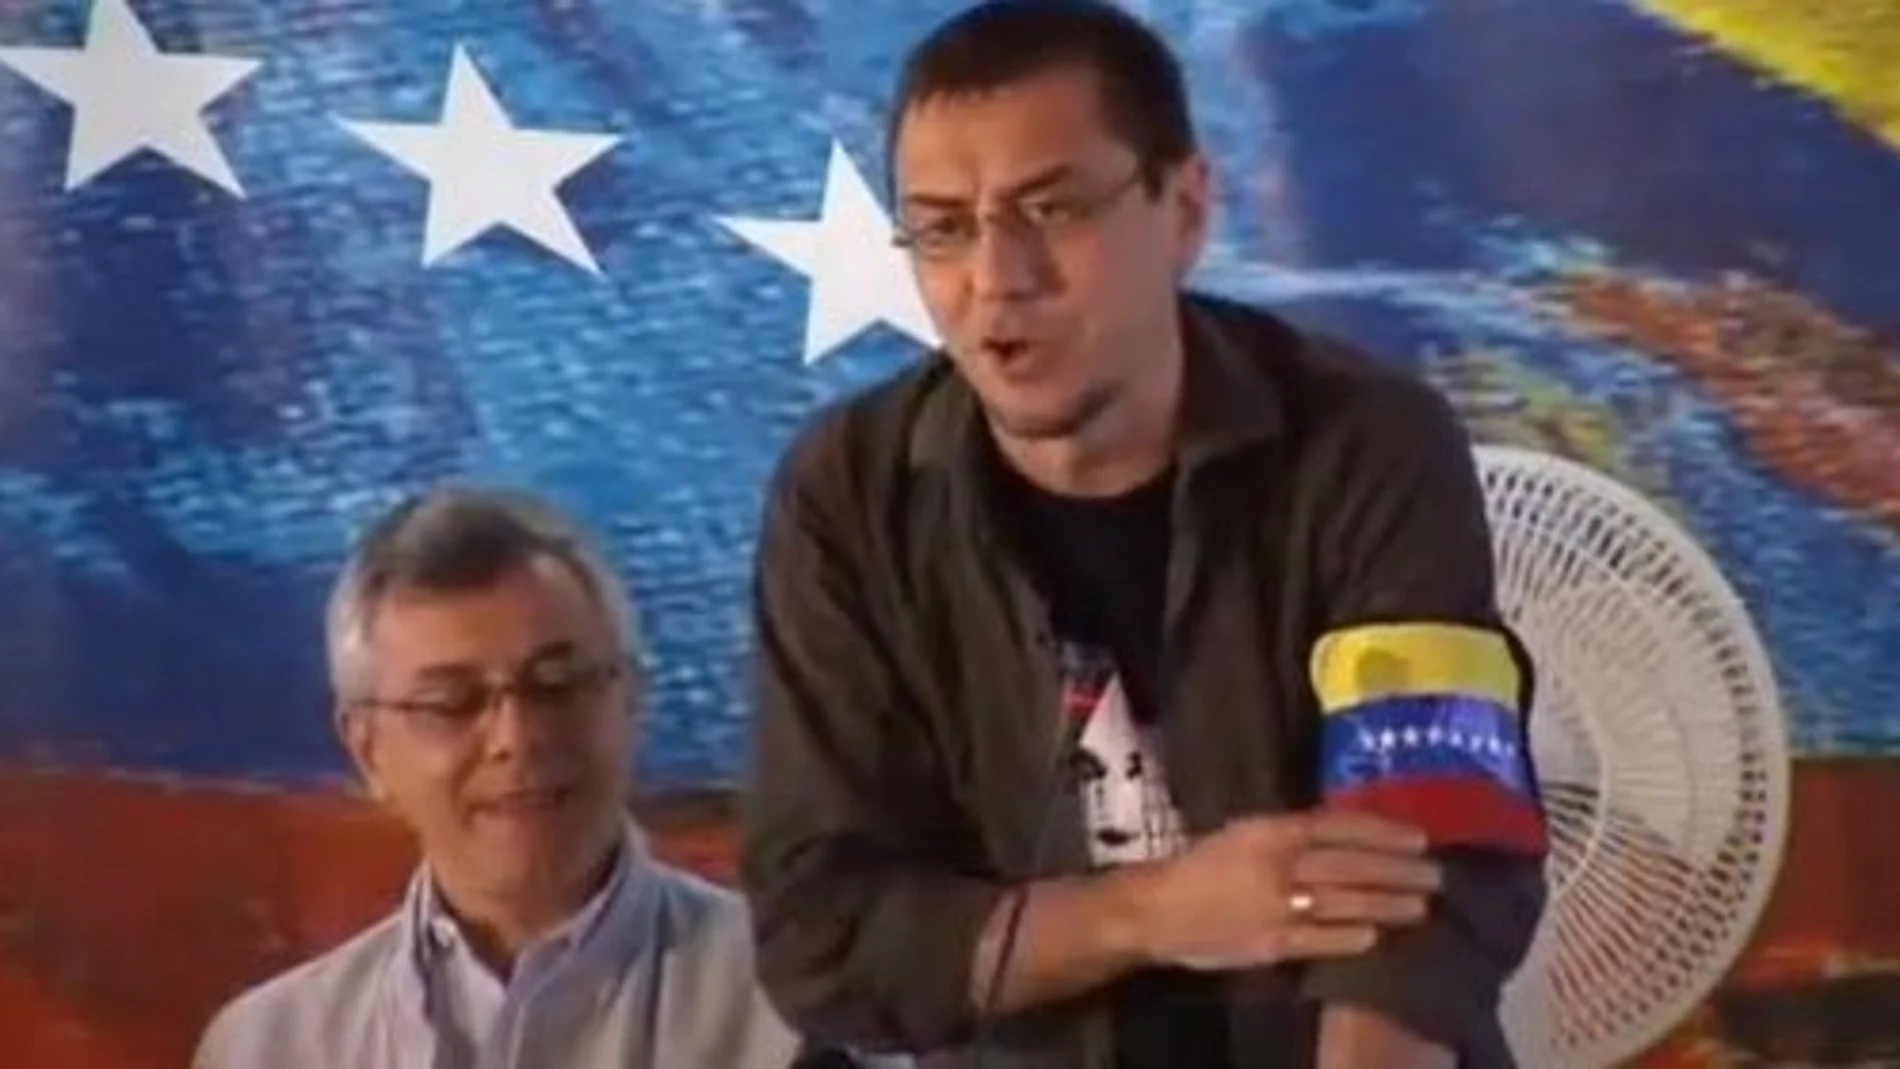 Juan carlos Monedero, días después de la muerte de Chávez en marzo de 2013 durante una mesa redonda en Caracas